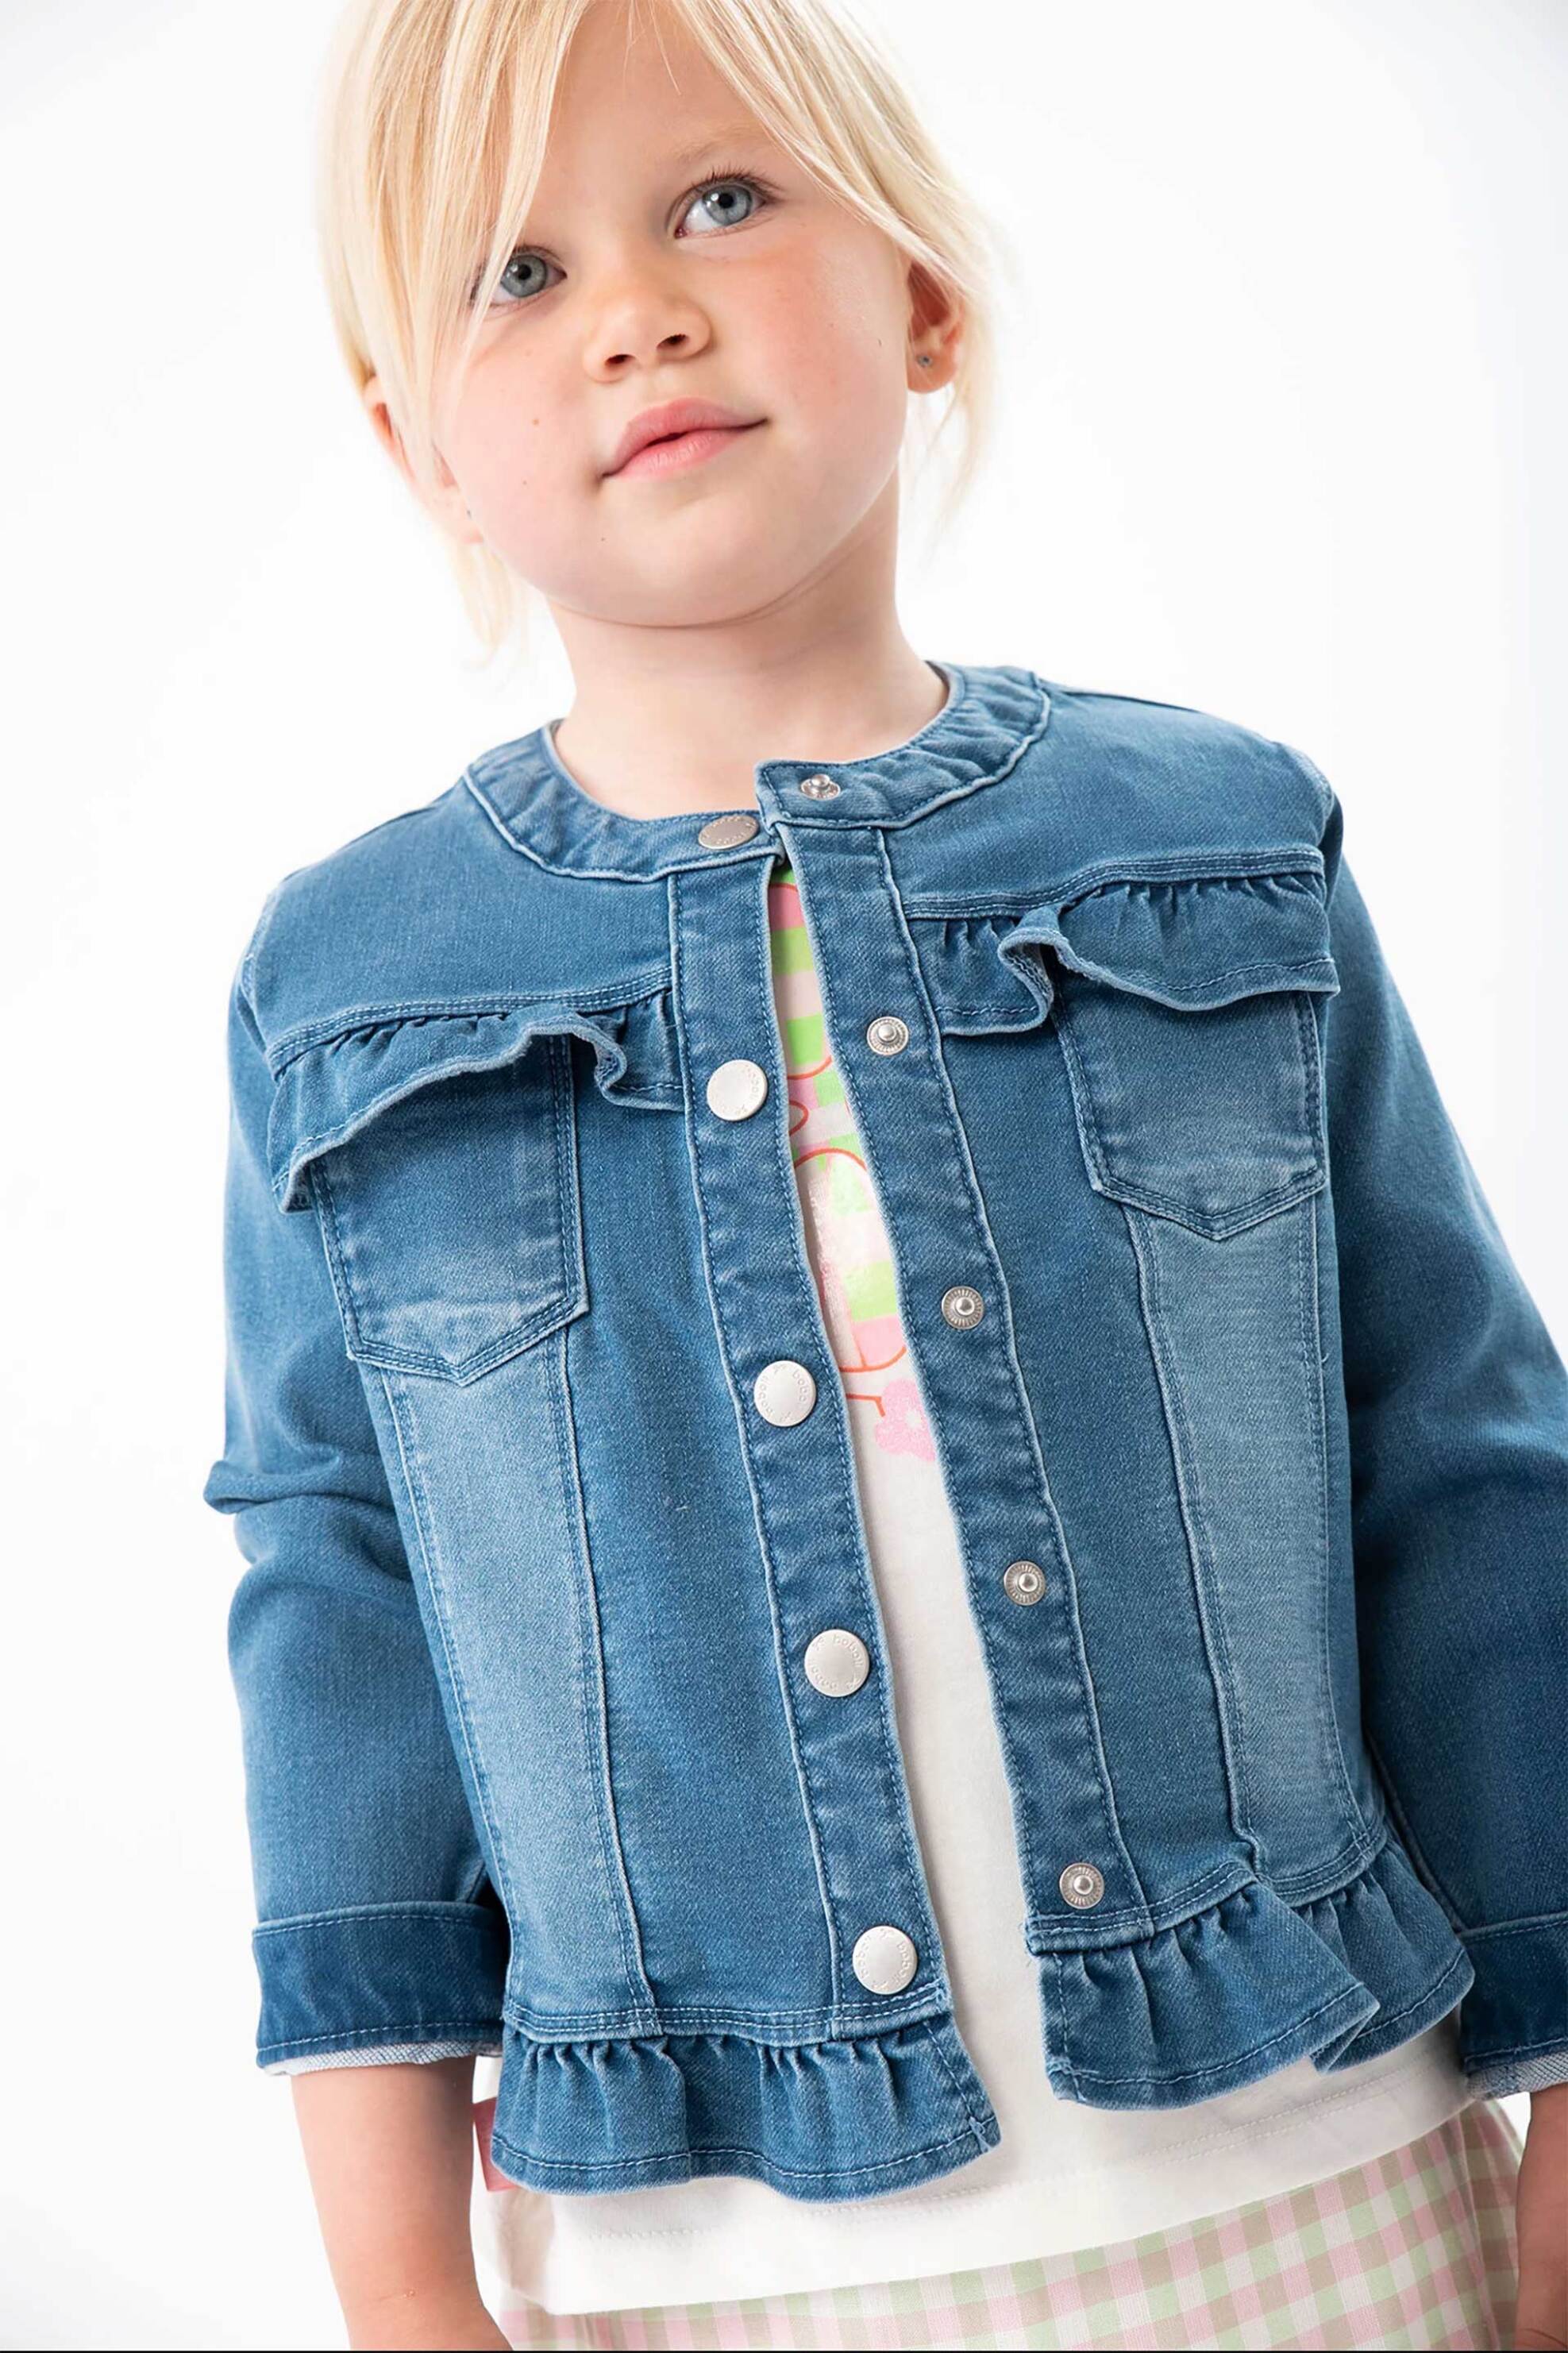 Παιδικά Ρούχα, Παπούτσια & Παιχνίδια > Παιδικά Ρούχα & Αξεσουάρ για Κορίτσια > Παιδικά Μπουφάν για Κορίτσια Boboli παιδικό denim jacket με βολάν - 208156 Denim Blue Σκούρο